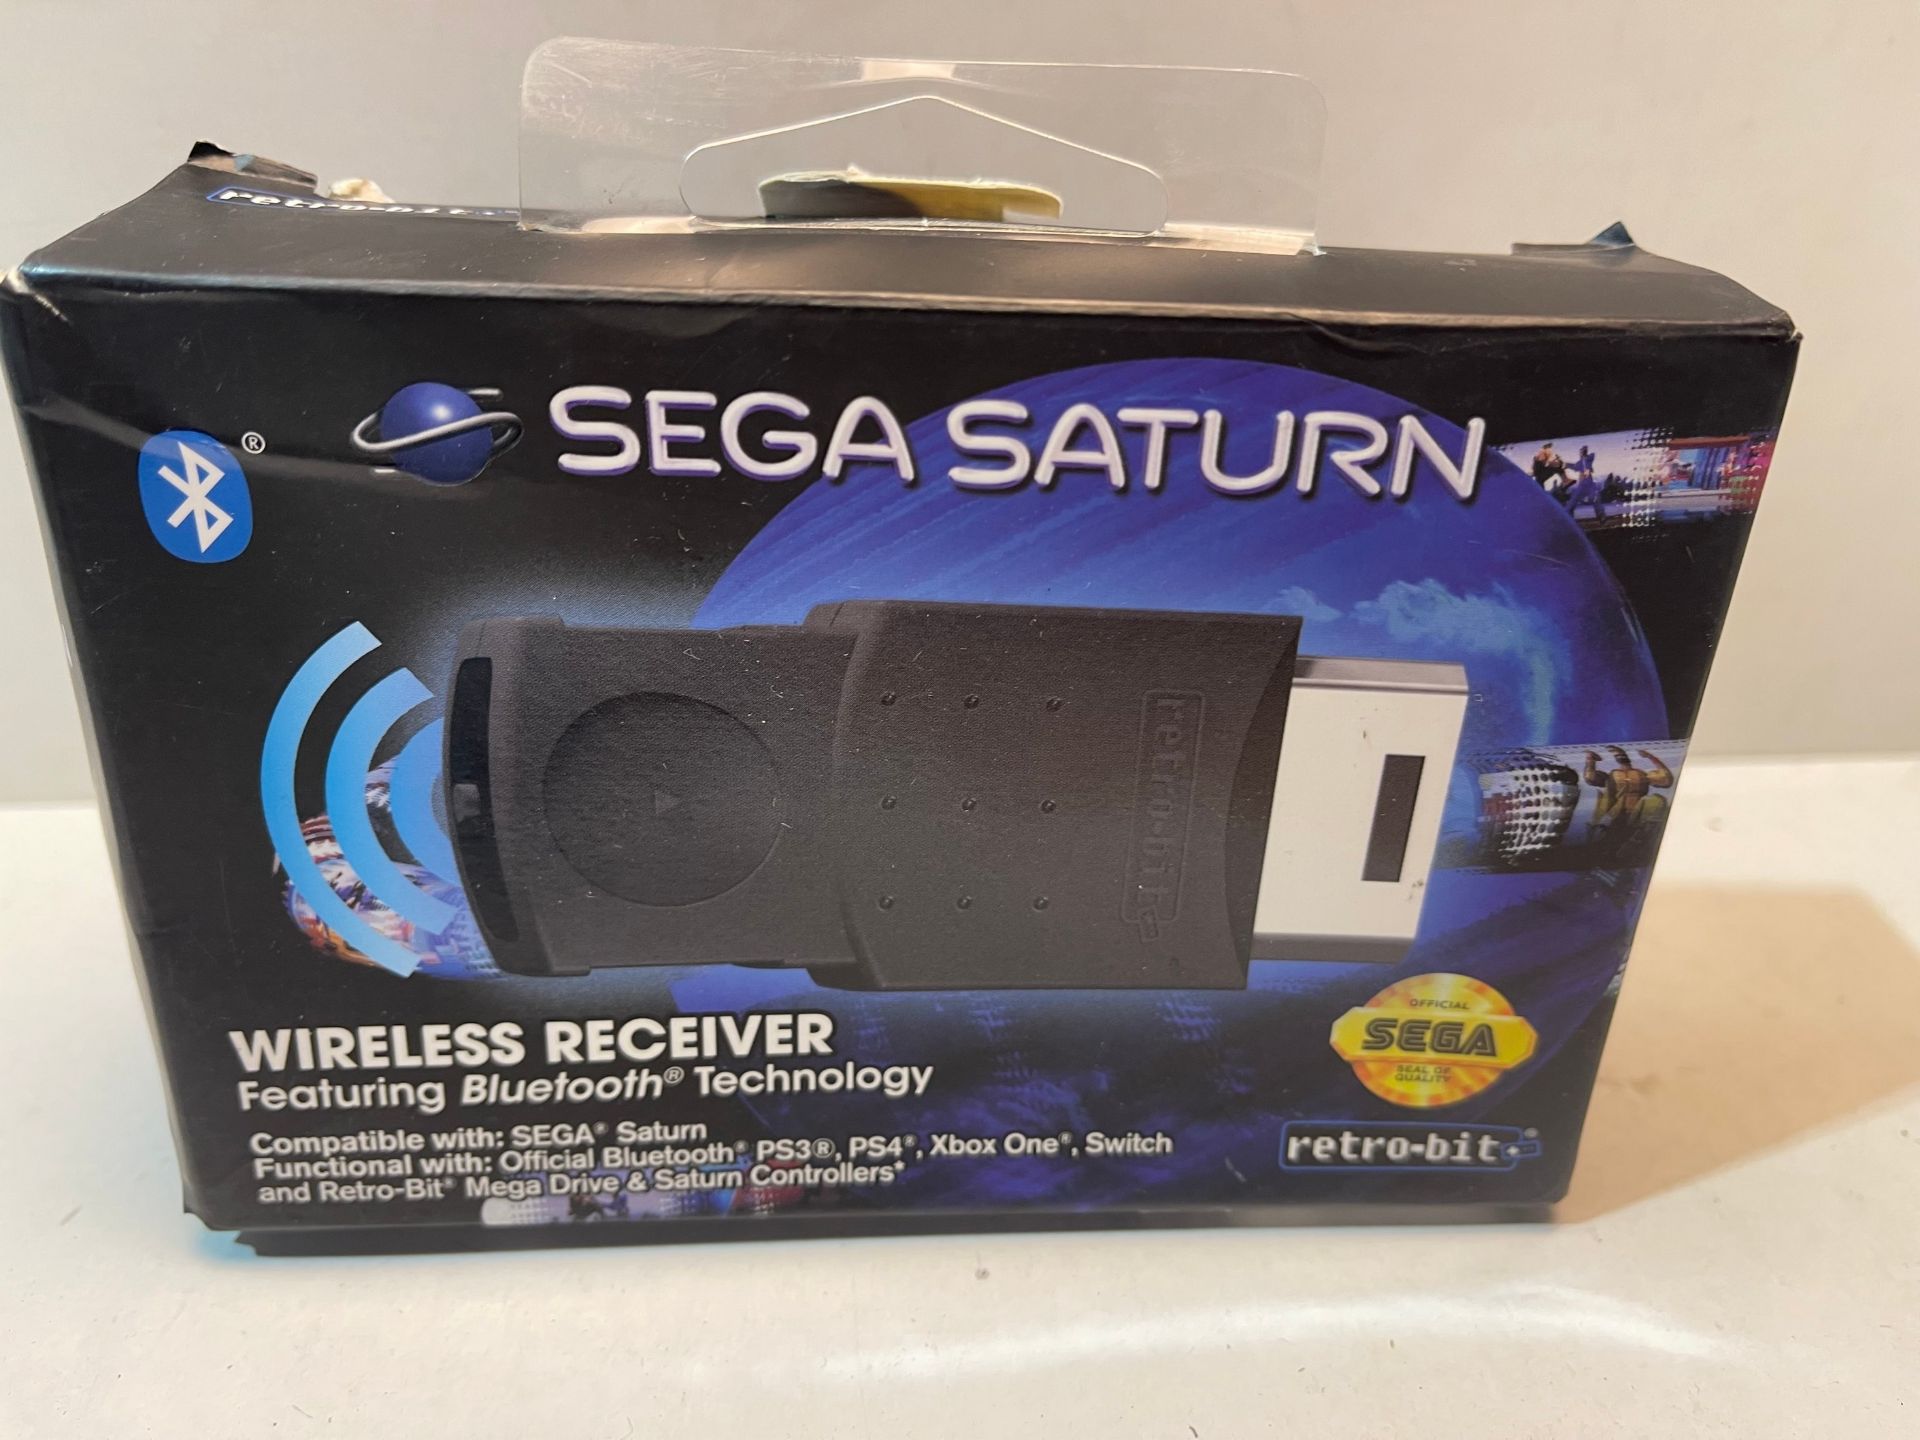 Retro-Bit Official SEGA Saturn Bluetooth Receiver for Sega Saturn Console £14.99Condition